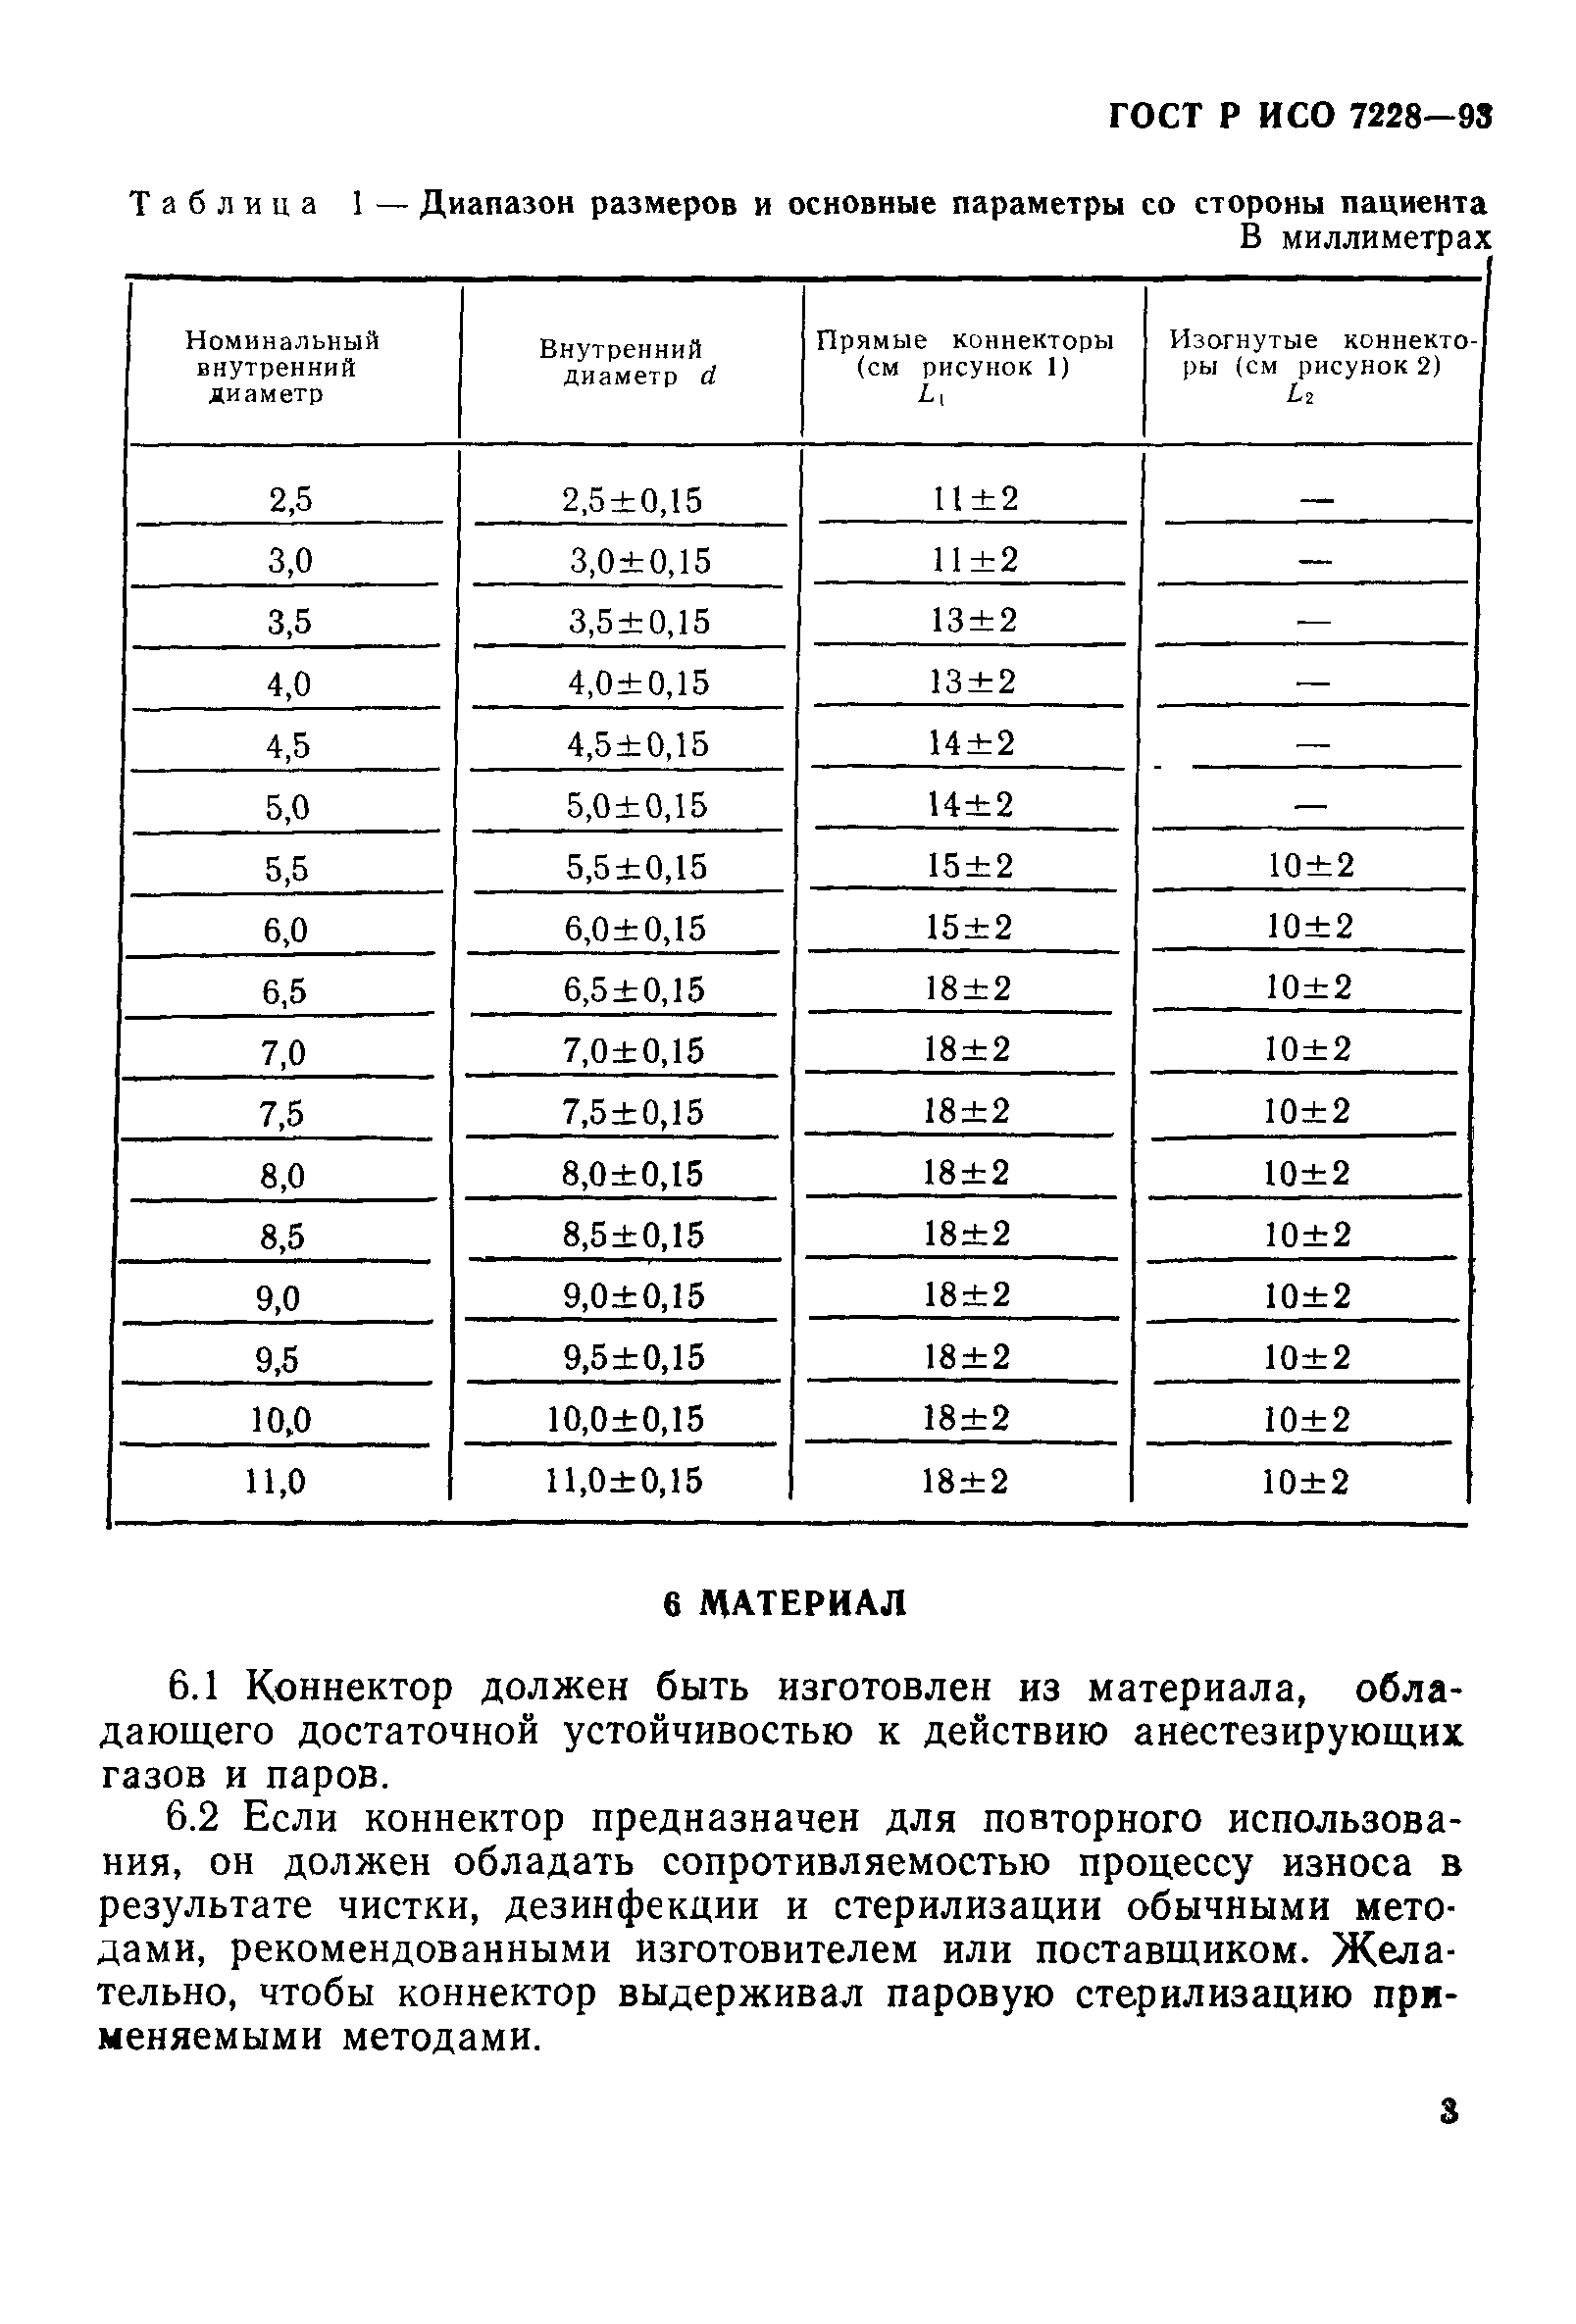 ГОСТ Р ИСО 7228-93